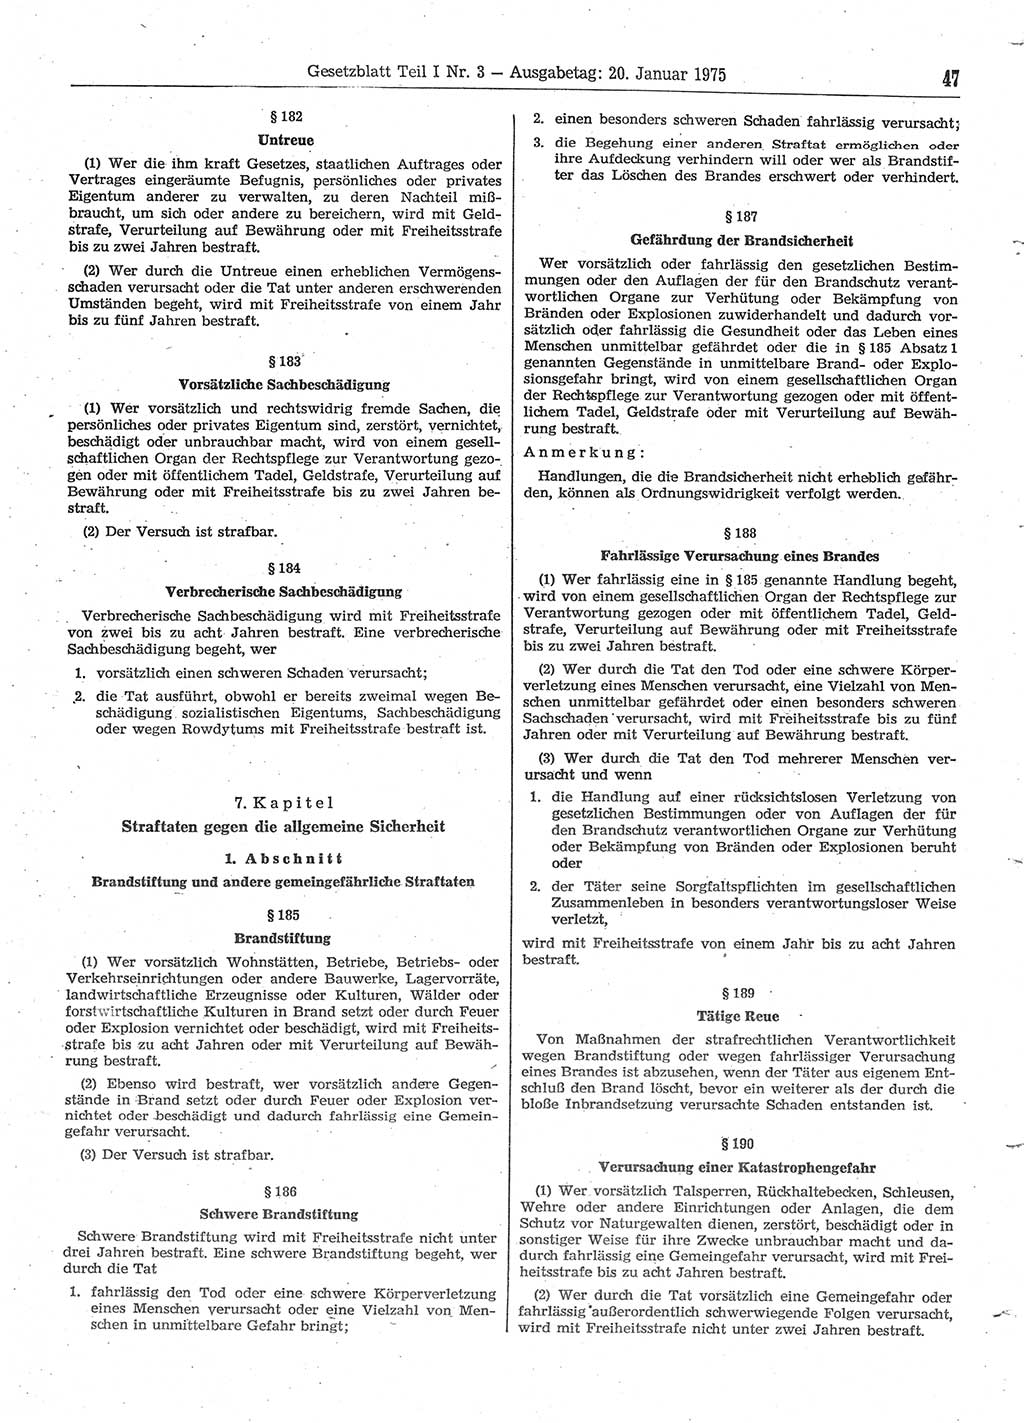 Gesetzblatt (GBl.) der Deutschen Demokratischen Republik (DDR) Teil Ⅰ 1975, Seite 47 (GBl. DDR Ⅰ 1975, S. 47)